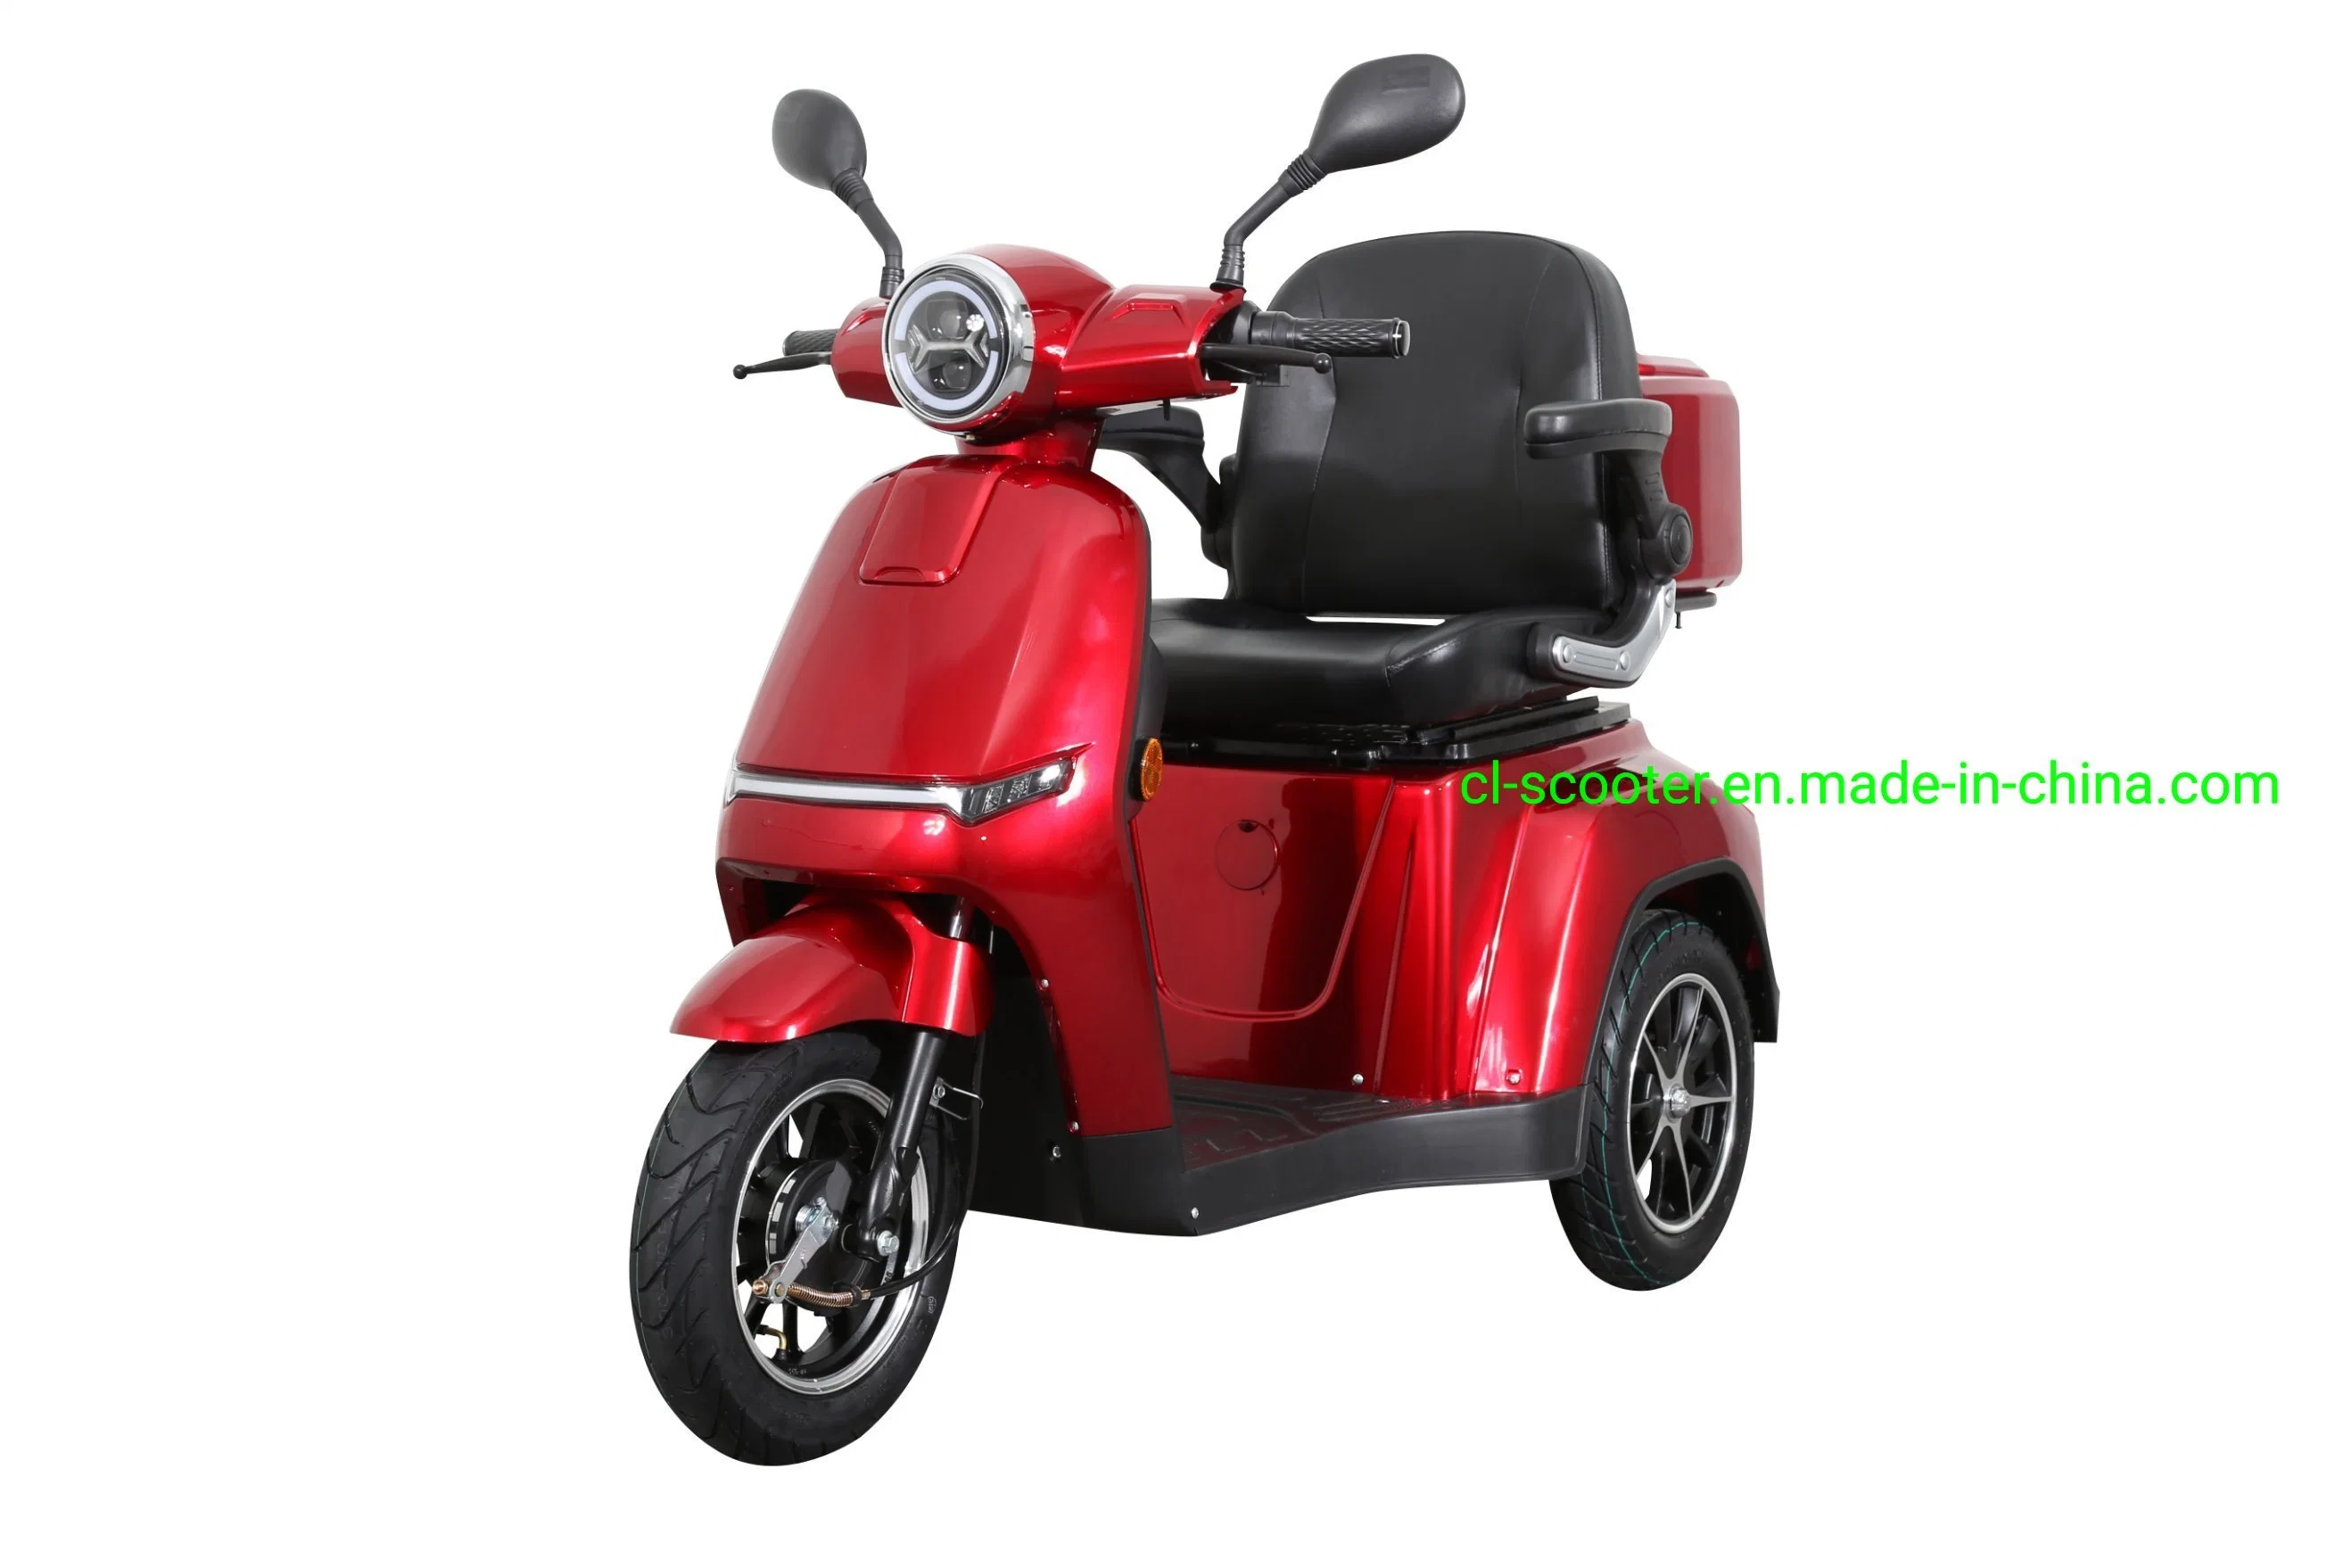 Mobilidade eléctrica norma CEE scooter, Motor de 1000 W e velocidade máxima de 25 km/h